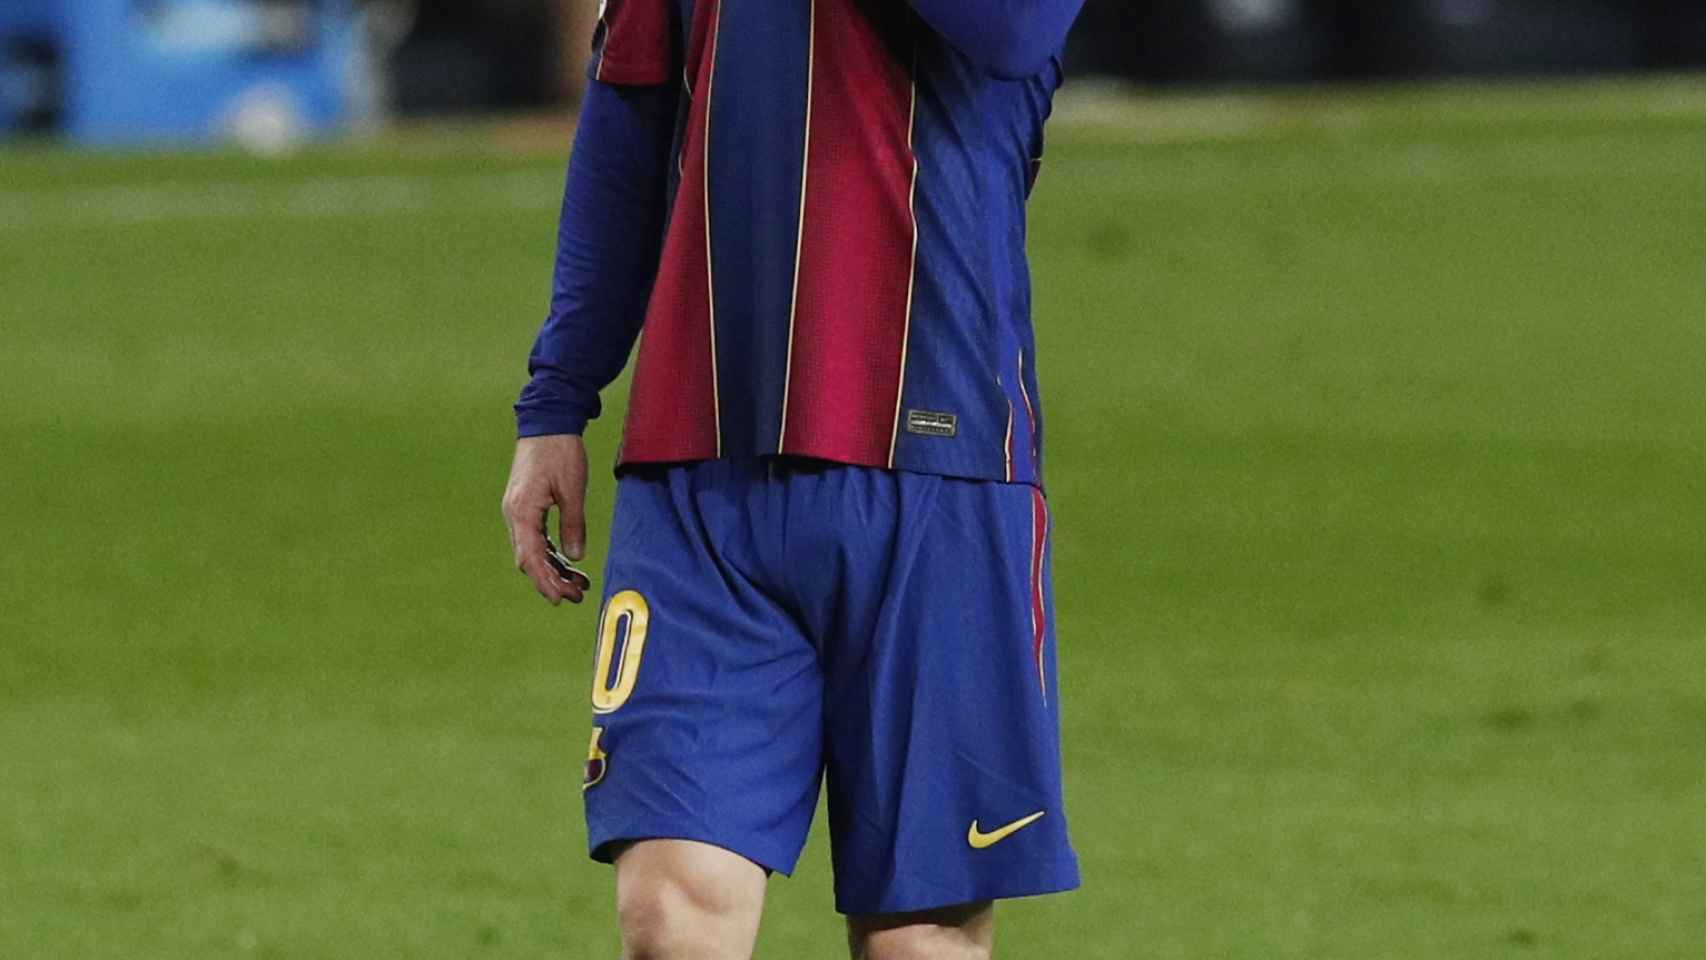 Leo Messi, en un momento del partido